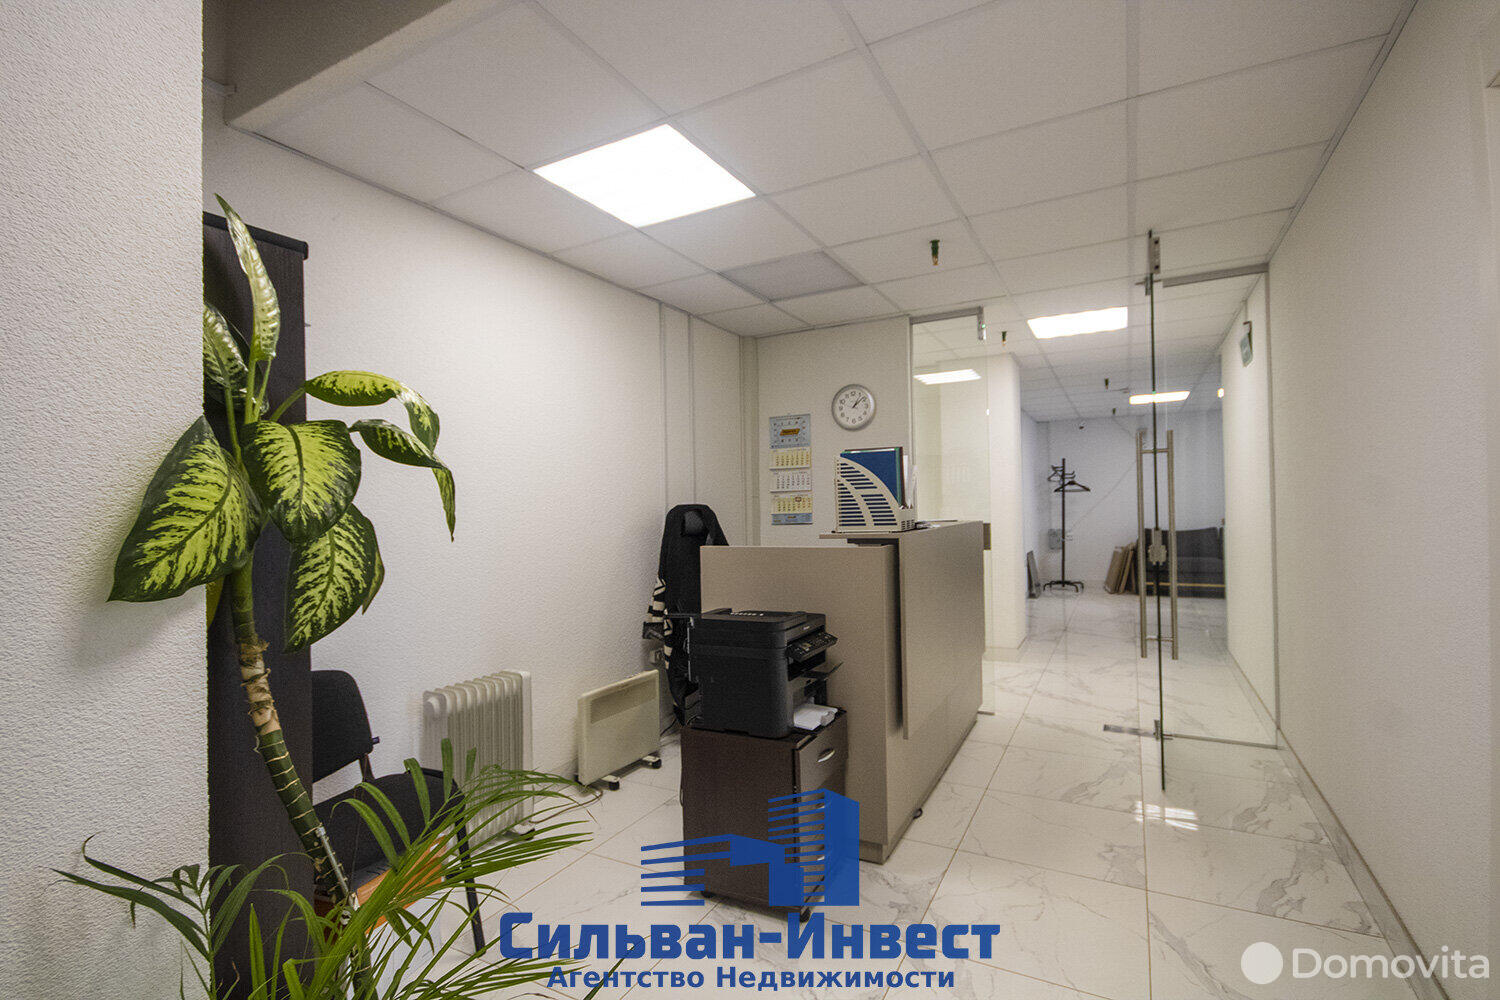 Снять офис на ул. Рудобельская, д. 3 в Минске, 1527EUR - фото 6